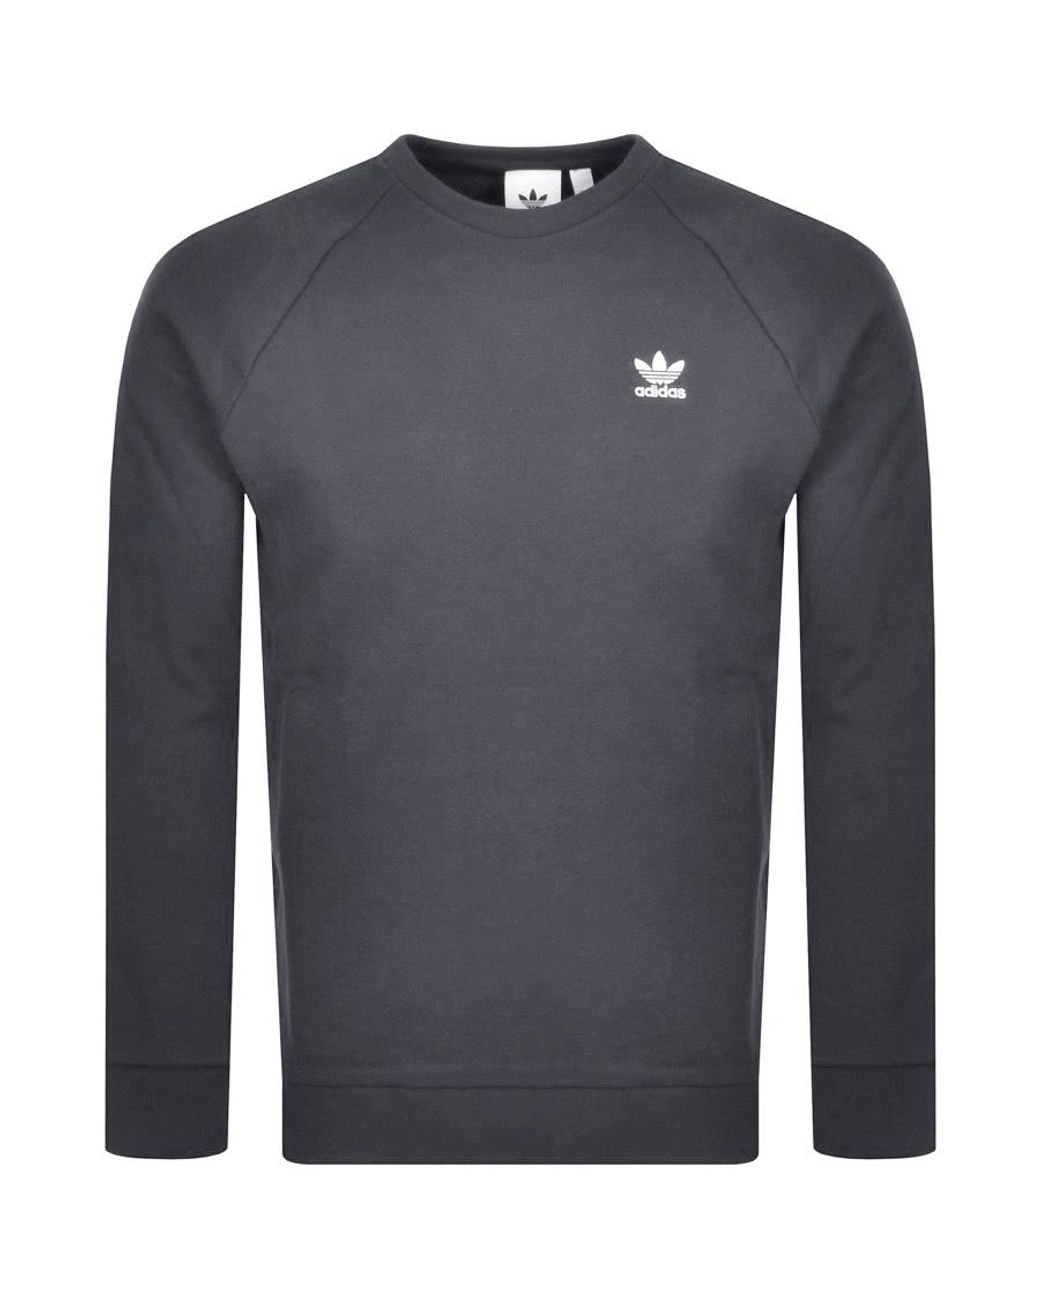 adidas Originals Fleece Essential Sweatshirt in Grey (Gray) for Men - Lyst